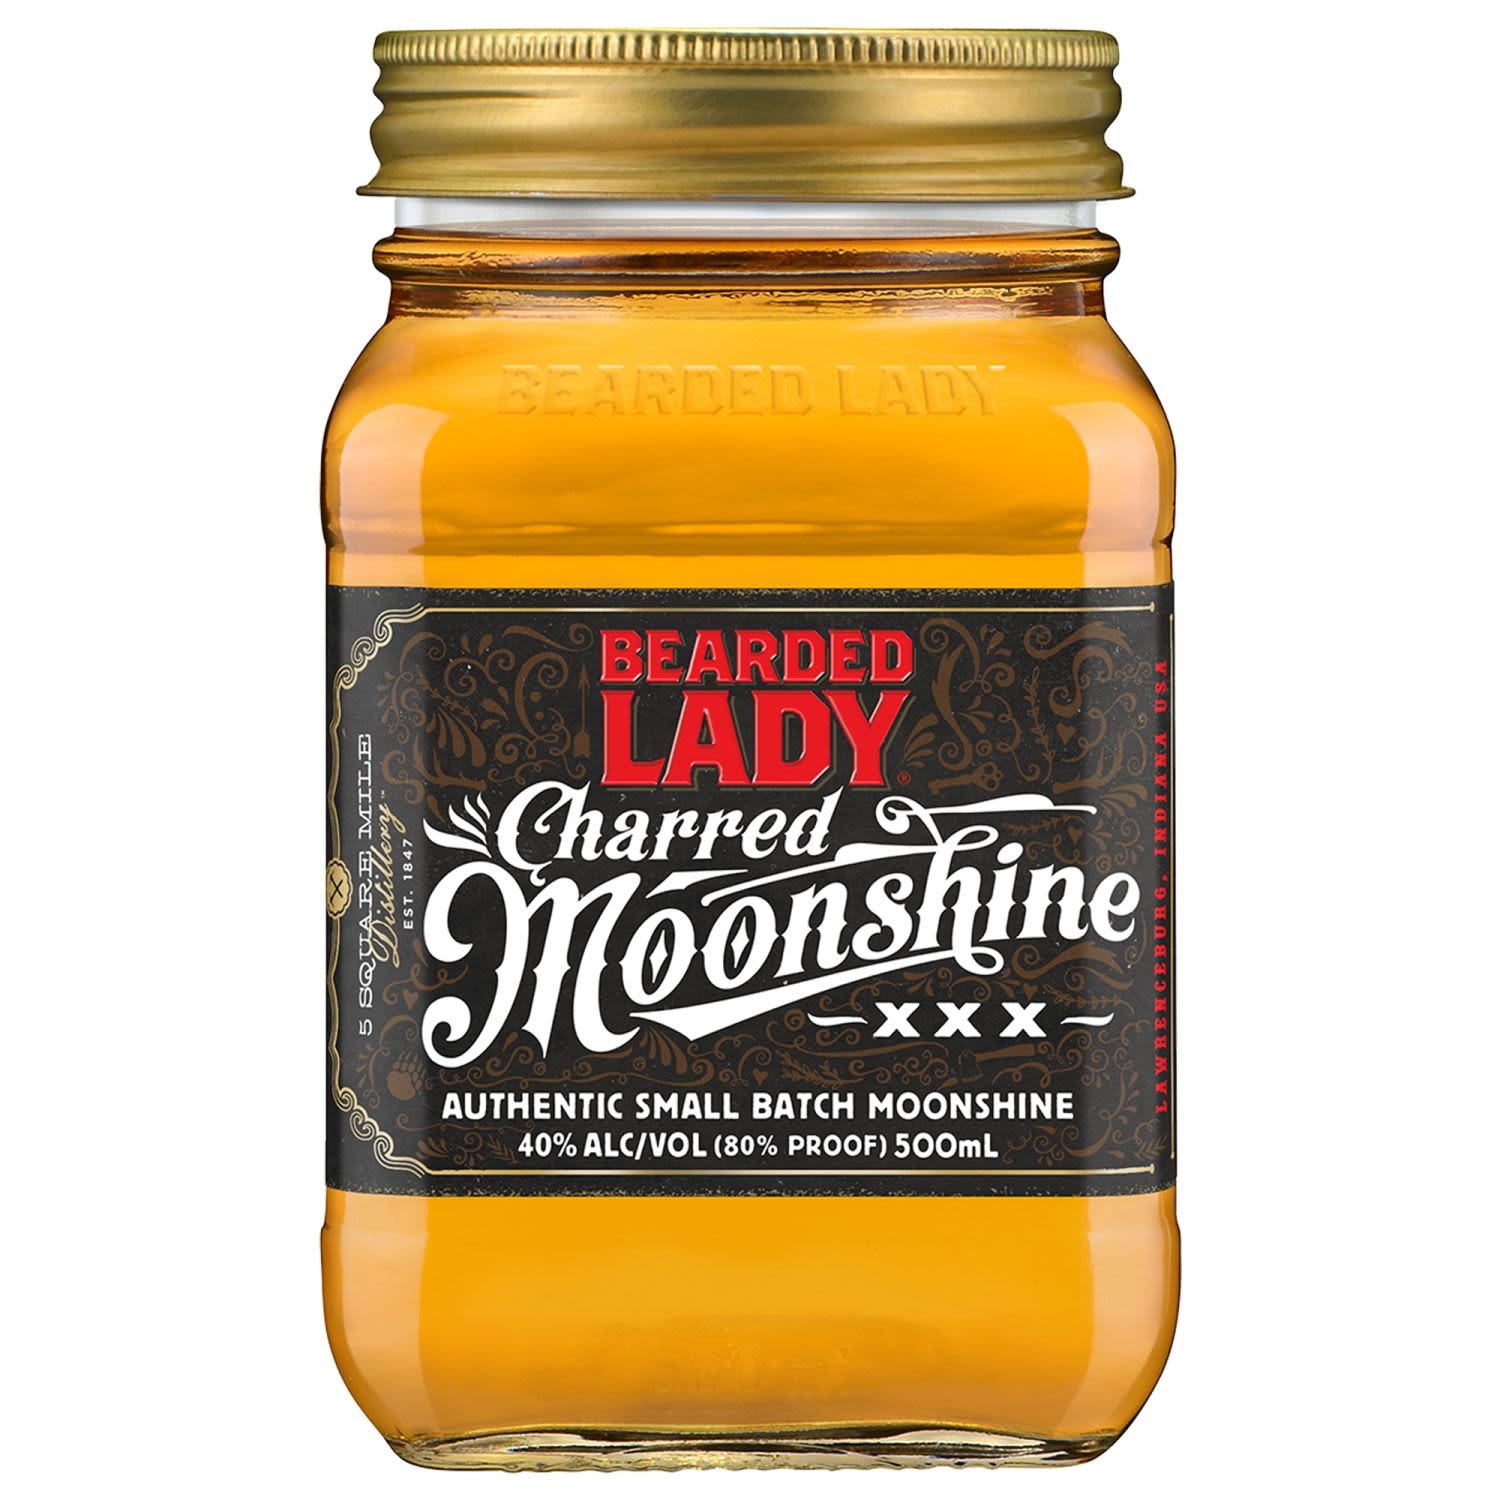 Bearded Lady Charred Moonshine 500mL Bottle